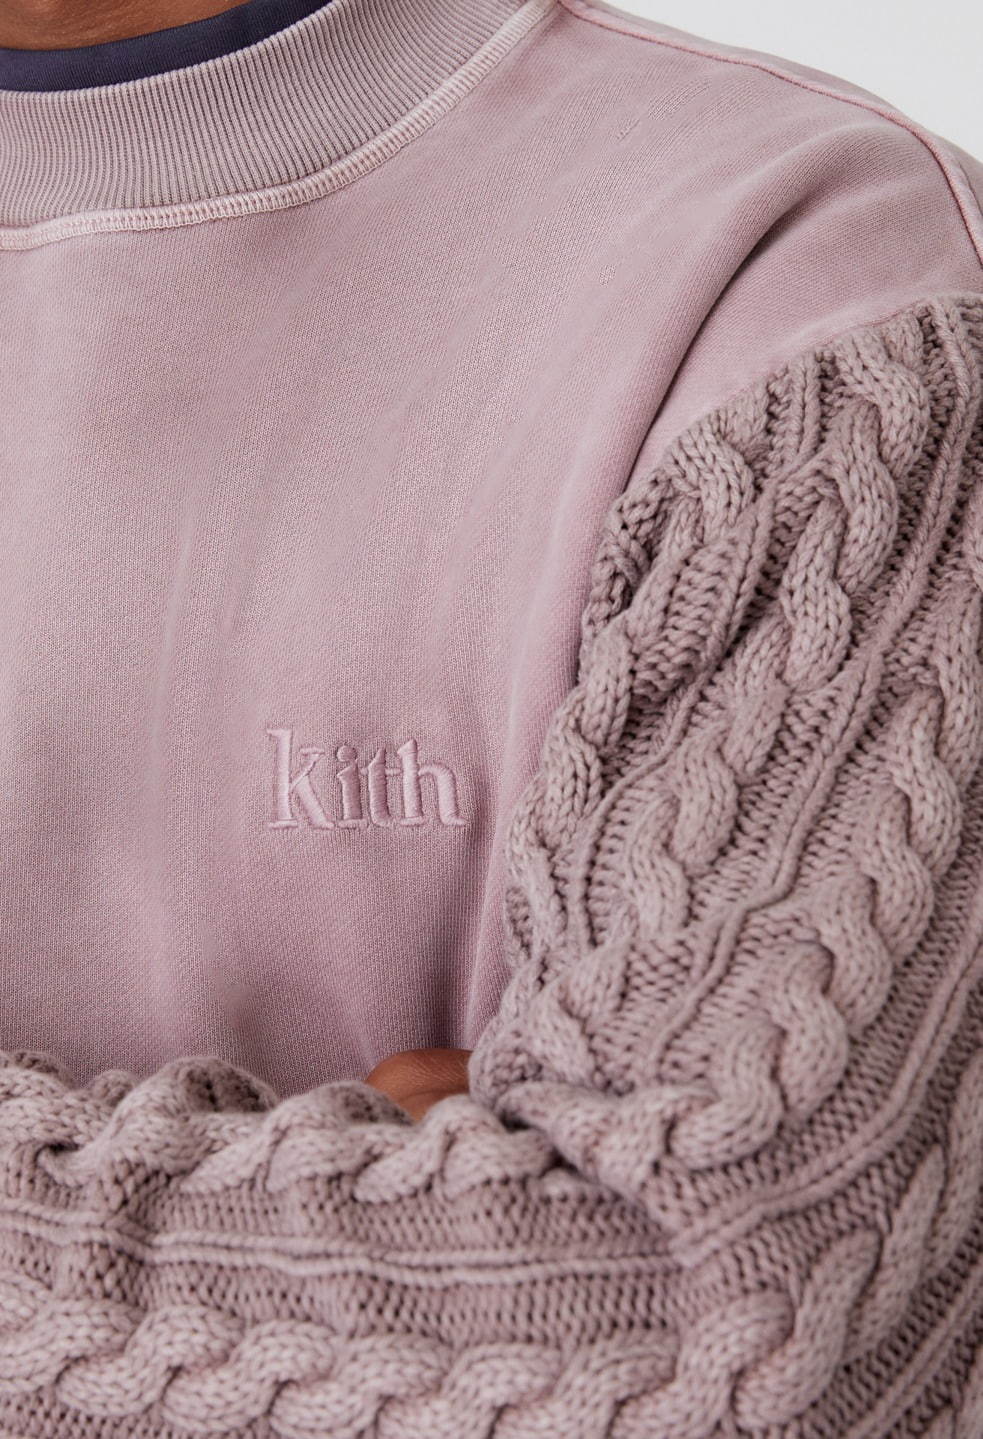 キス(Kith) 2020年冬メンズコレクション  - 写真99